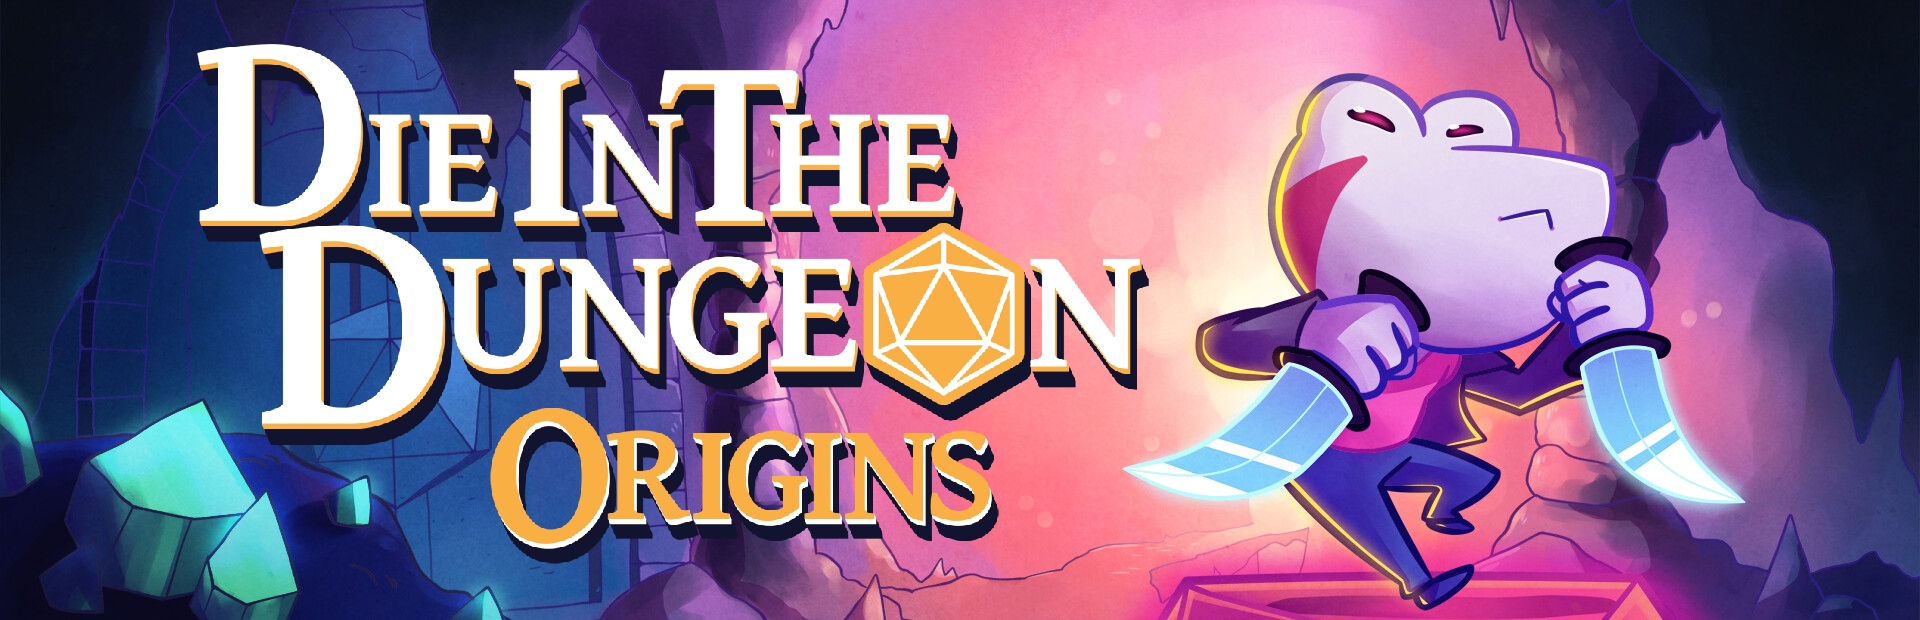 Die in the Dungeon: Origins